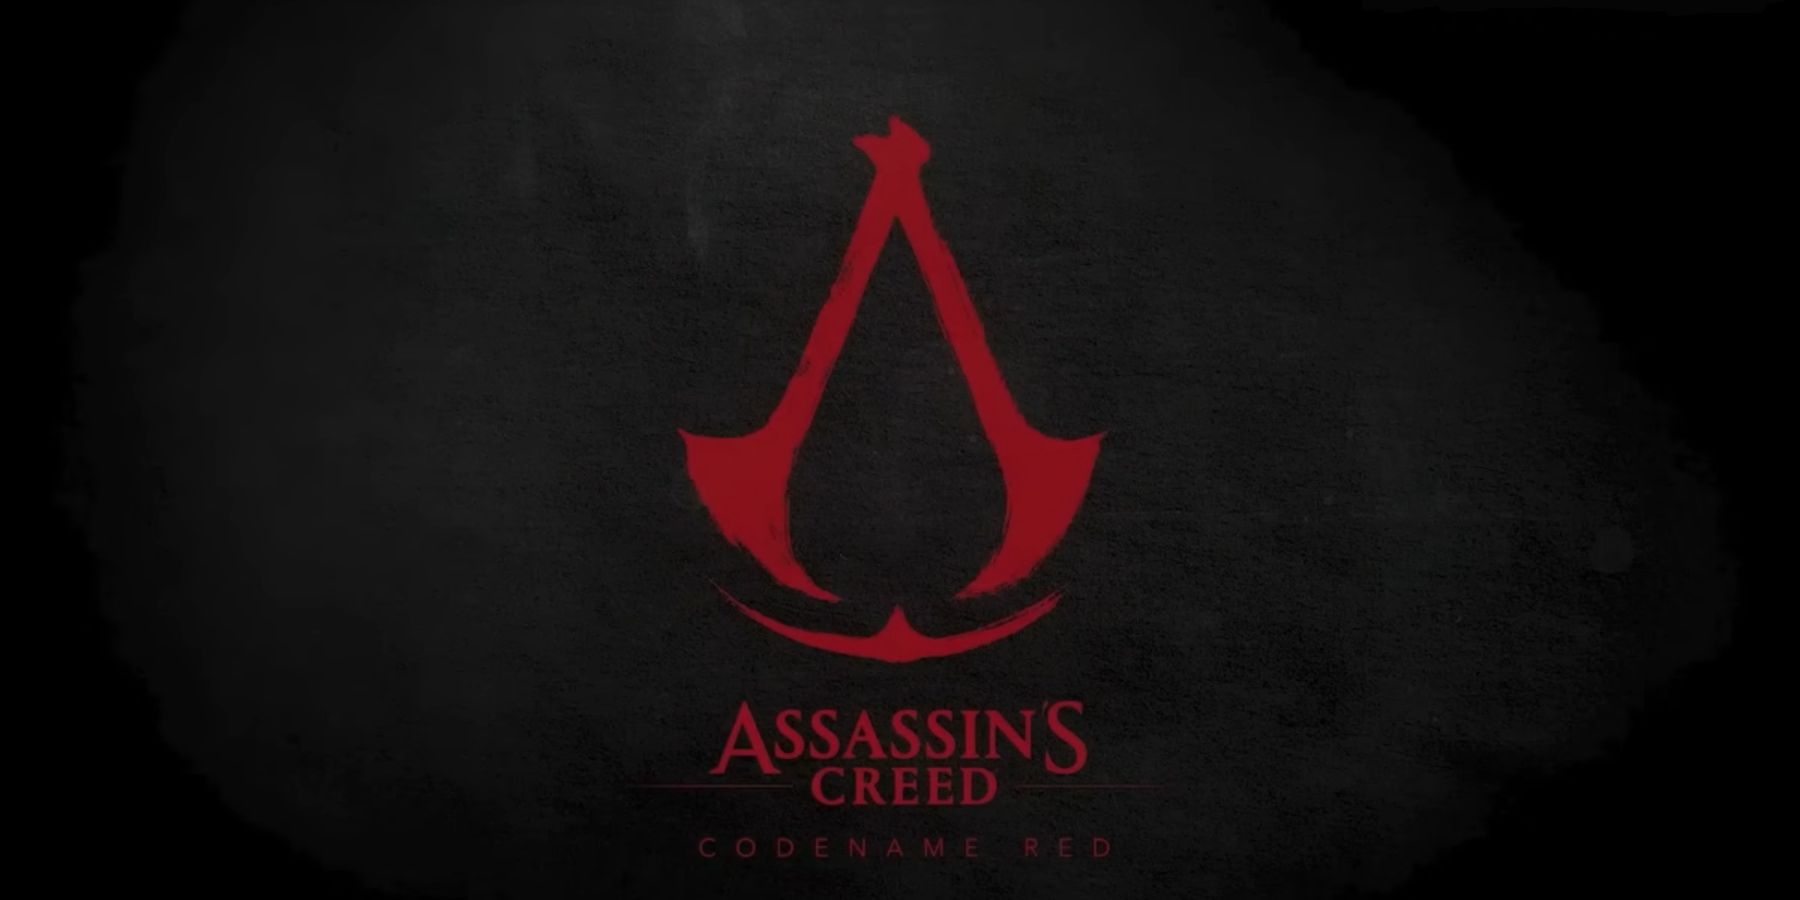 Los desarrolladores de reclamos de empleados de Ubisoft han dejado a la compañía debido al director de Assassin’s Creed Red